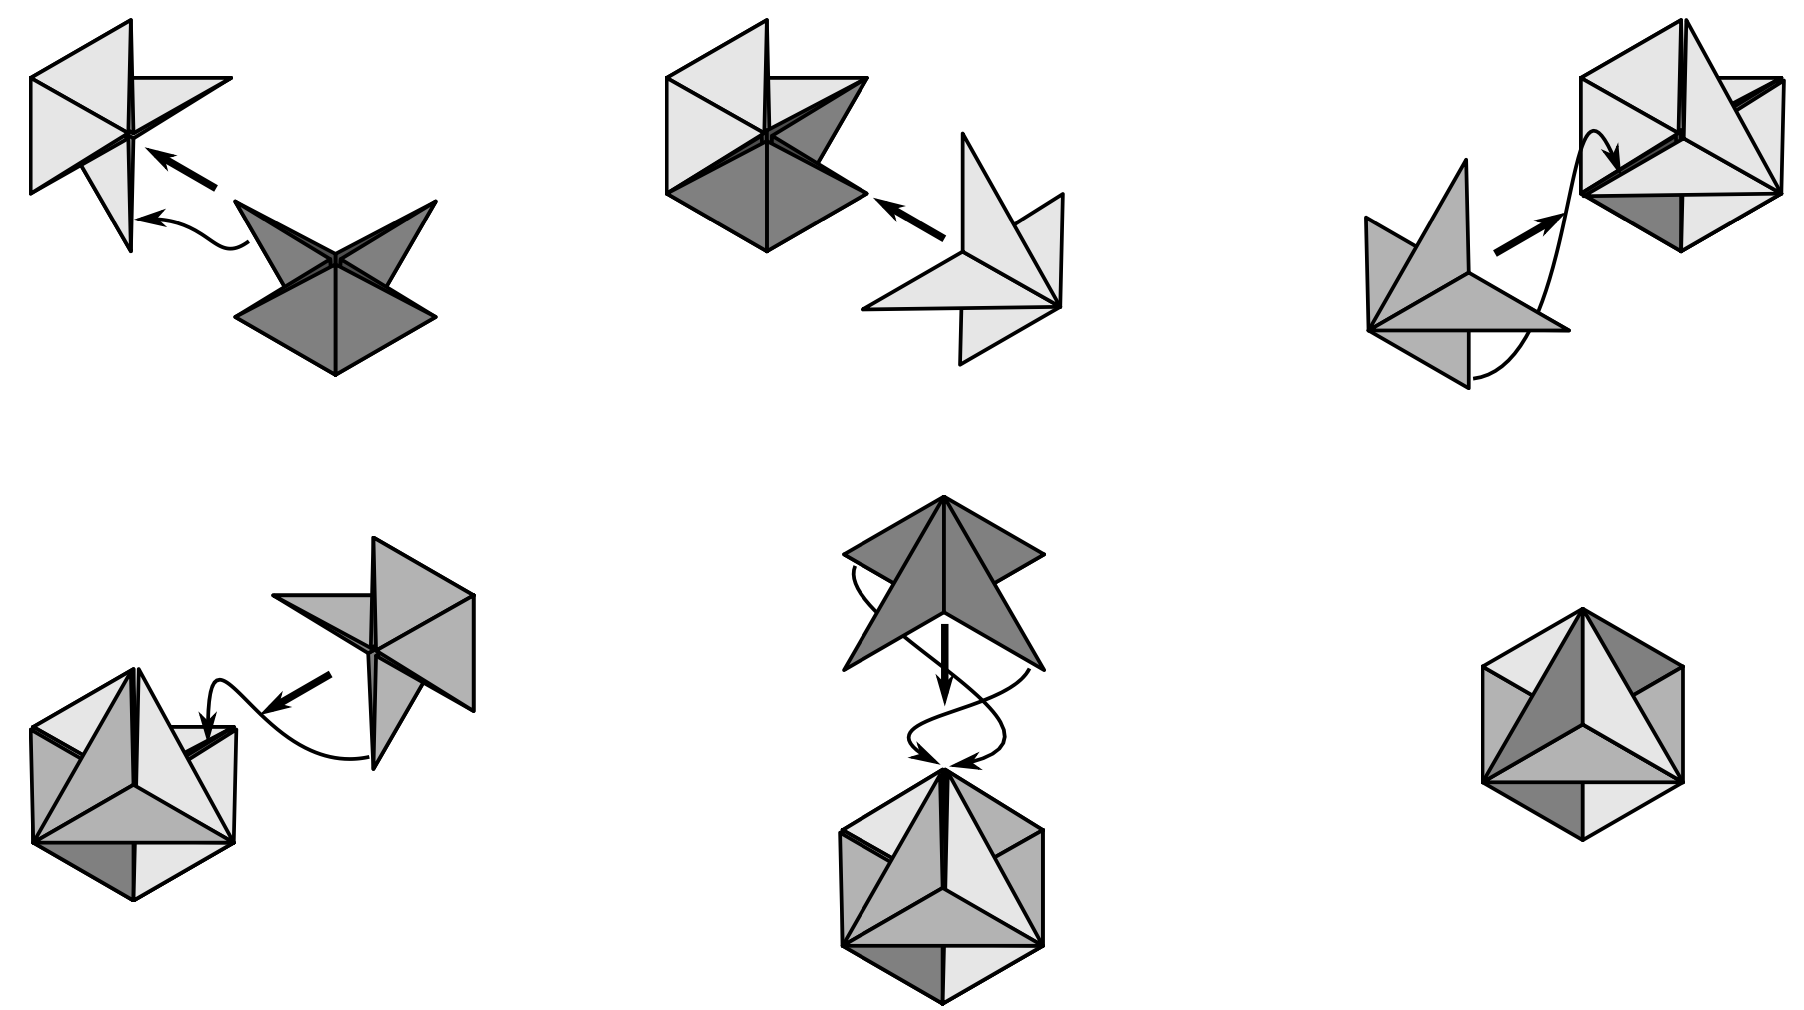 Zusammenfügen zum Oktaeder (Etzold & Petzschler, 2014, S. 64)